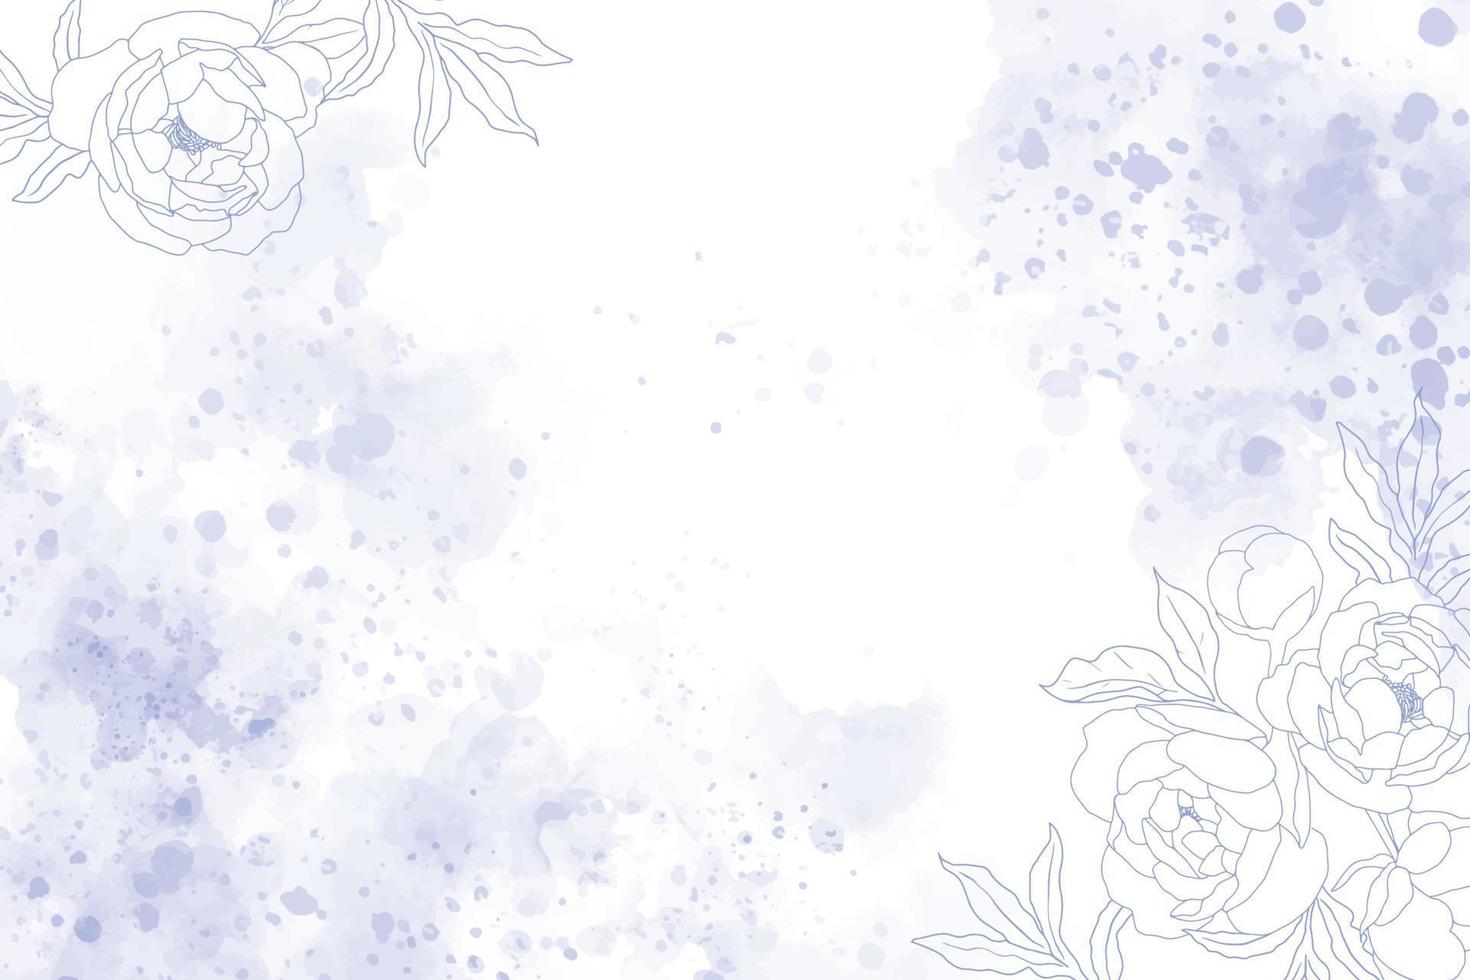 fond de splash bleu indigo aquarelle avec fleur de pivoine dessin au trait blanc doodle vecteur